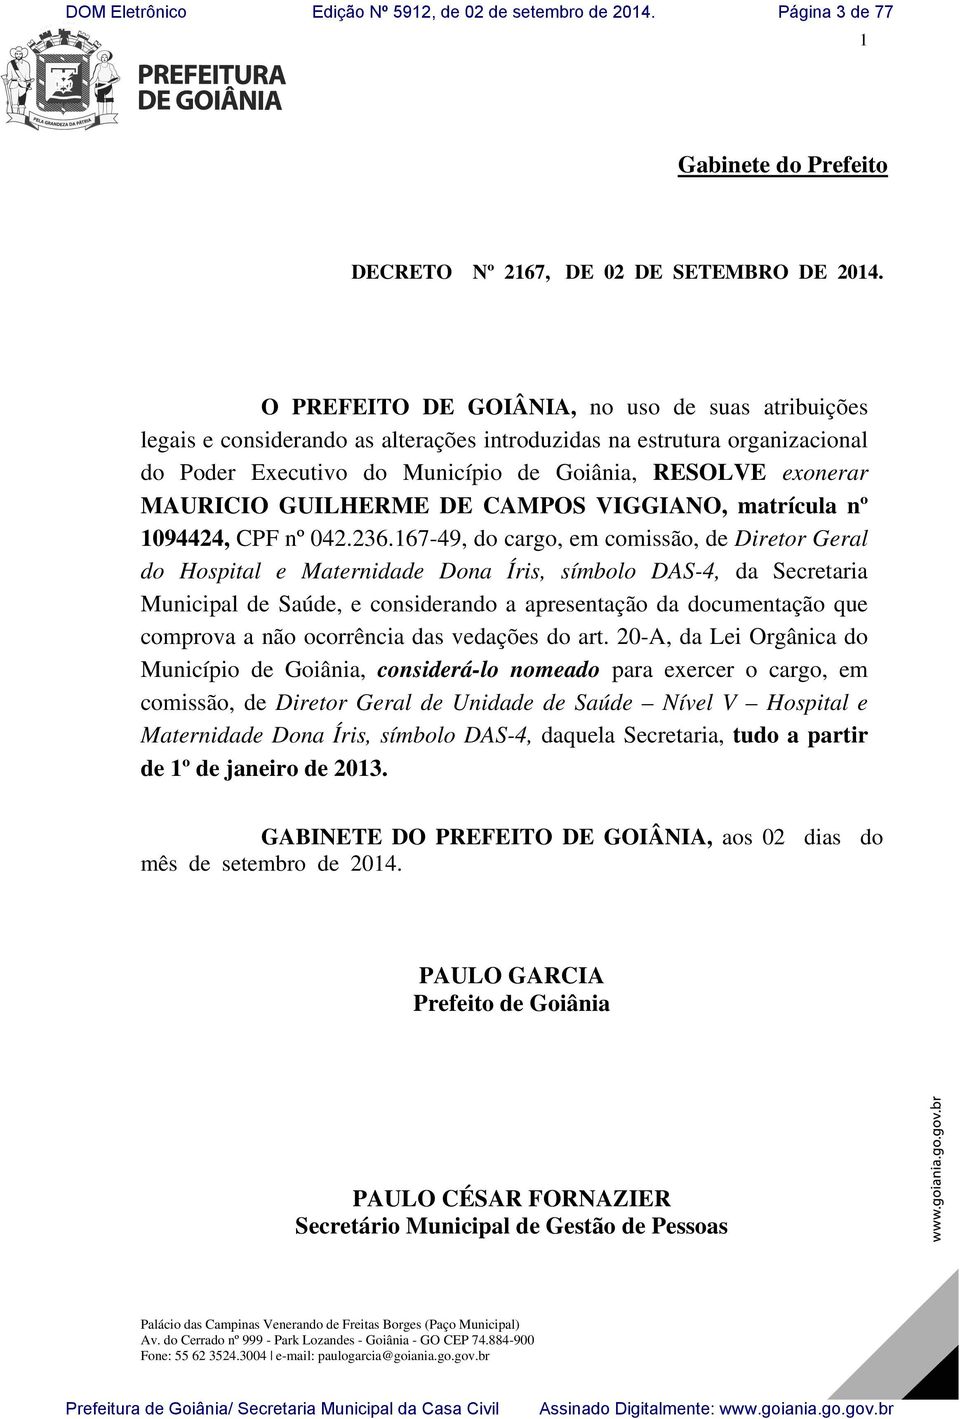 GUILHERME DE CAMPOS VIGGIANO, matrícula nº 1094424, CPF nº 042.236.